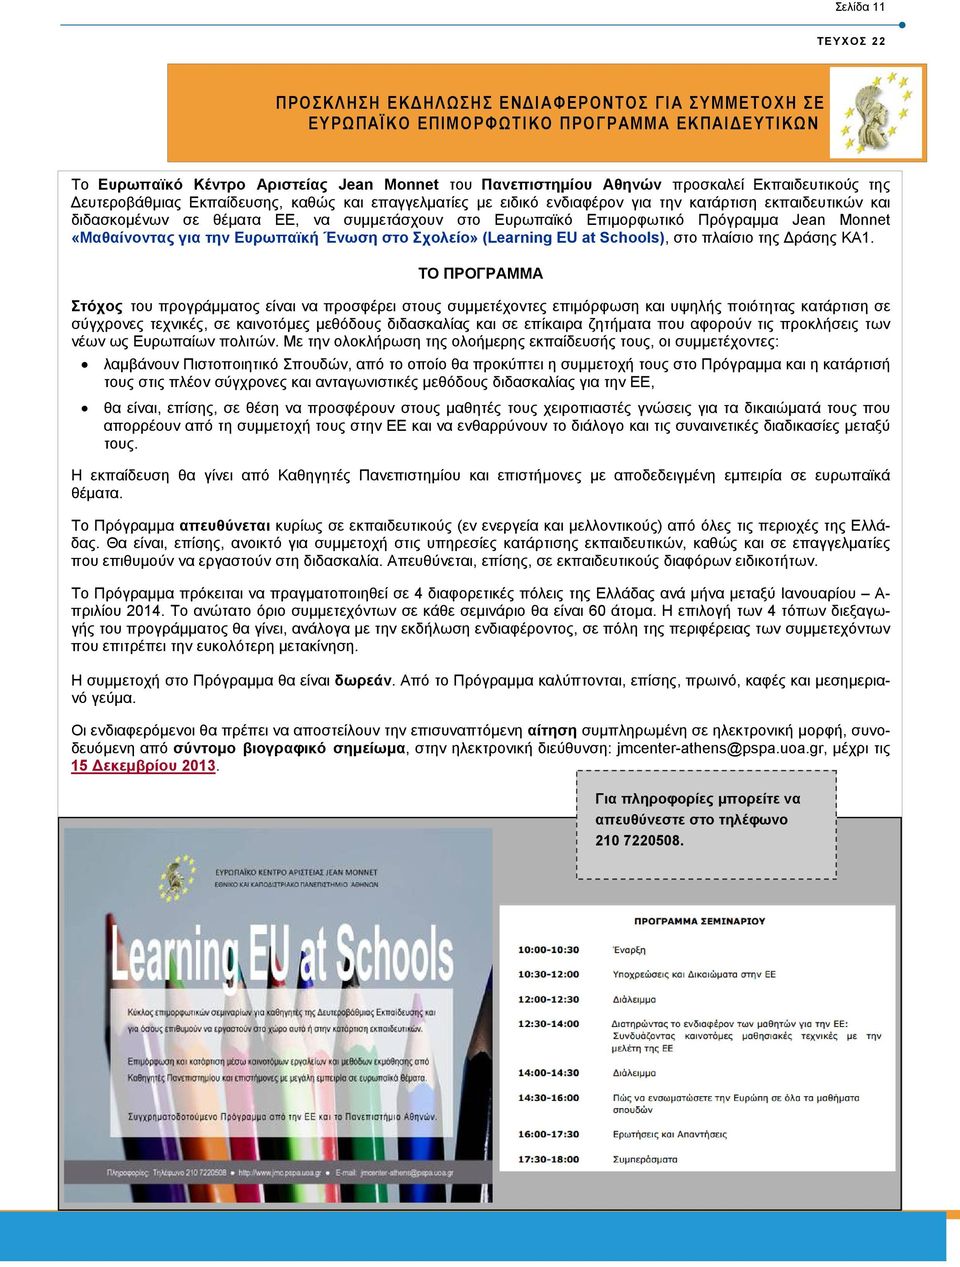 Πρόγραµµα Jean Monnet «Μαθαίνοντας για την Ευρωπαϊκή Ένωση στο Σχολείο» (Learning EU at Schools), στο πλαίσιο της ράσης KA1.